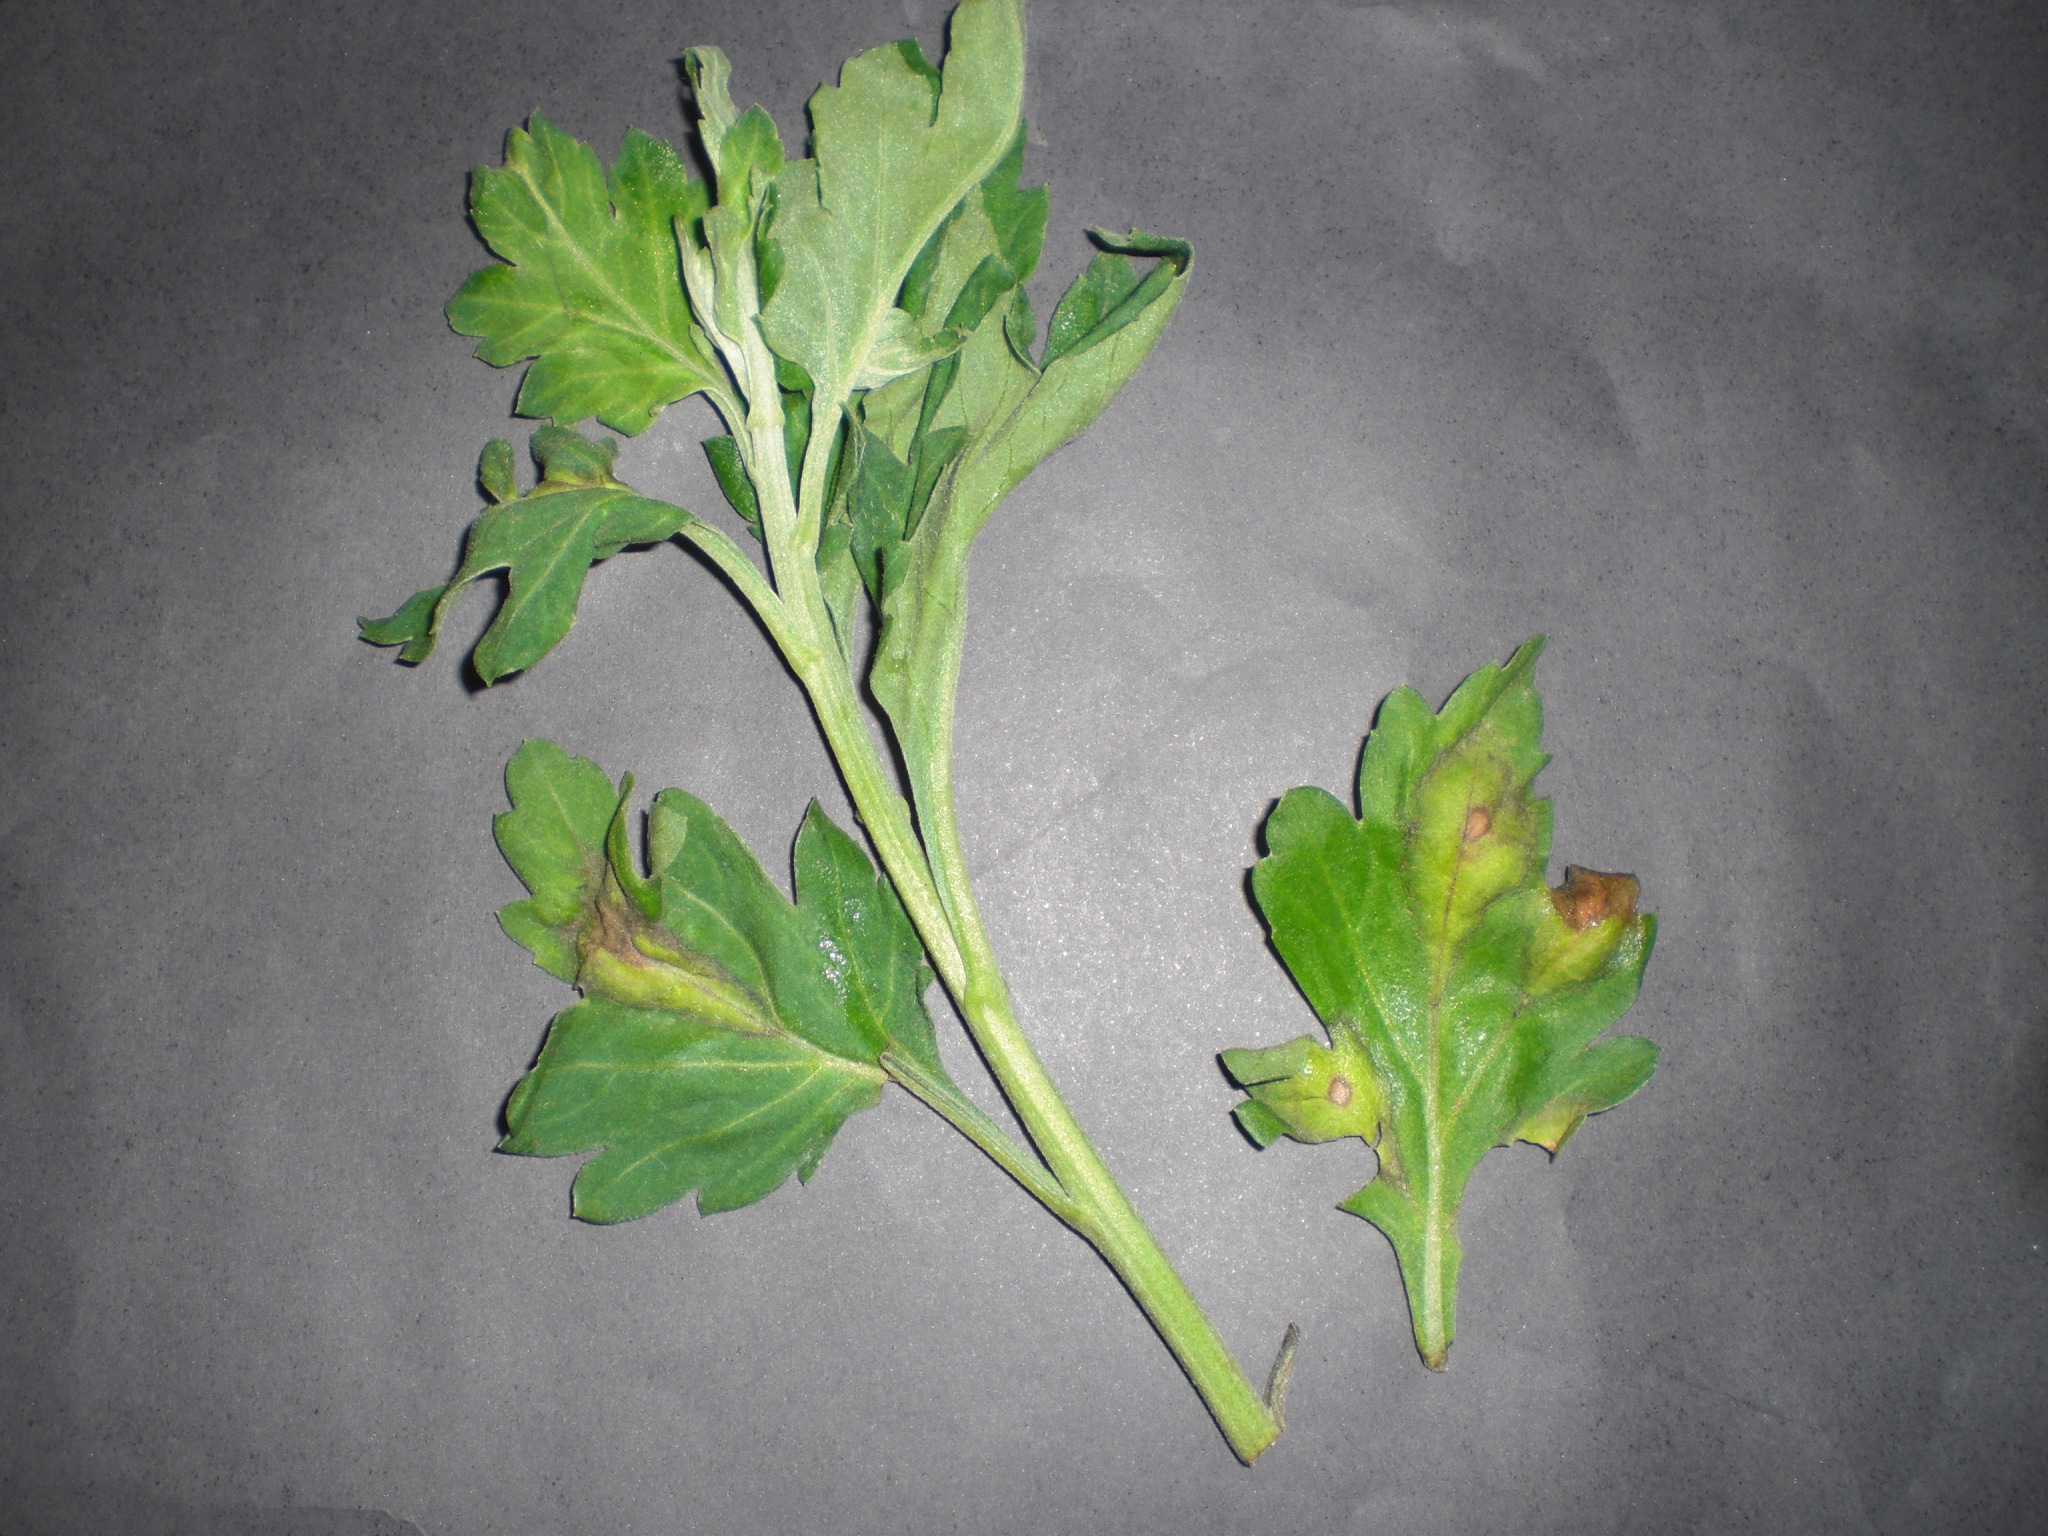 <p><b><p>Ramo e folhas de crisântemo naturalmente infectados por Chrysanthemum stem necrosis virus (CSNV), mostrando manchas cloróticas e necrose.</p></b></p><p>Autor: M. A. V. Alexandre</p>